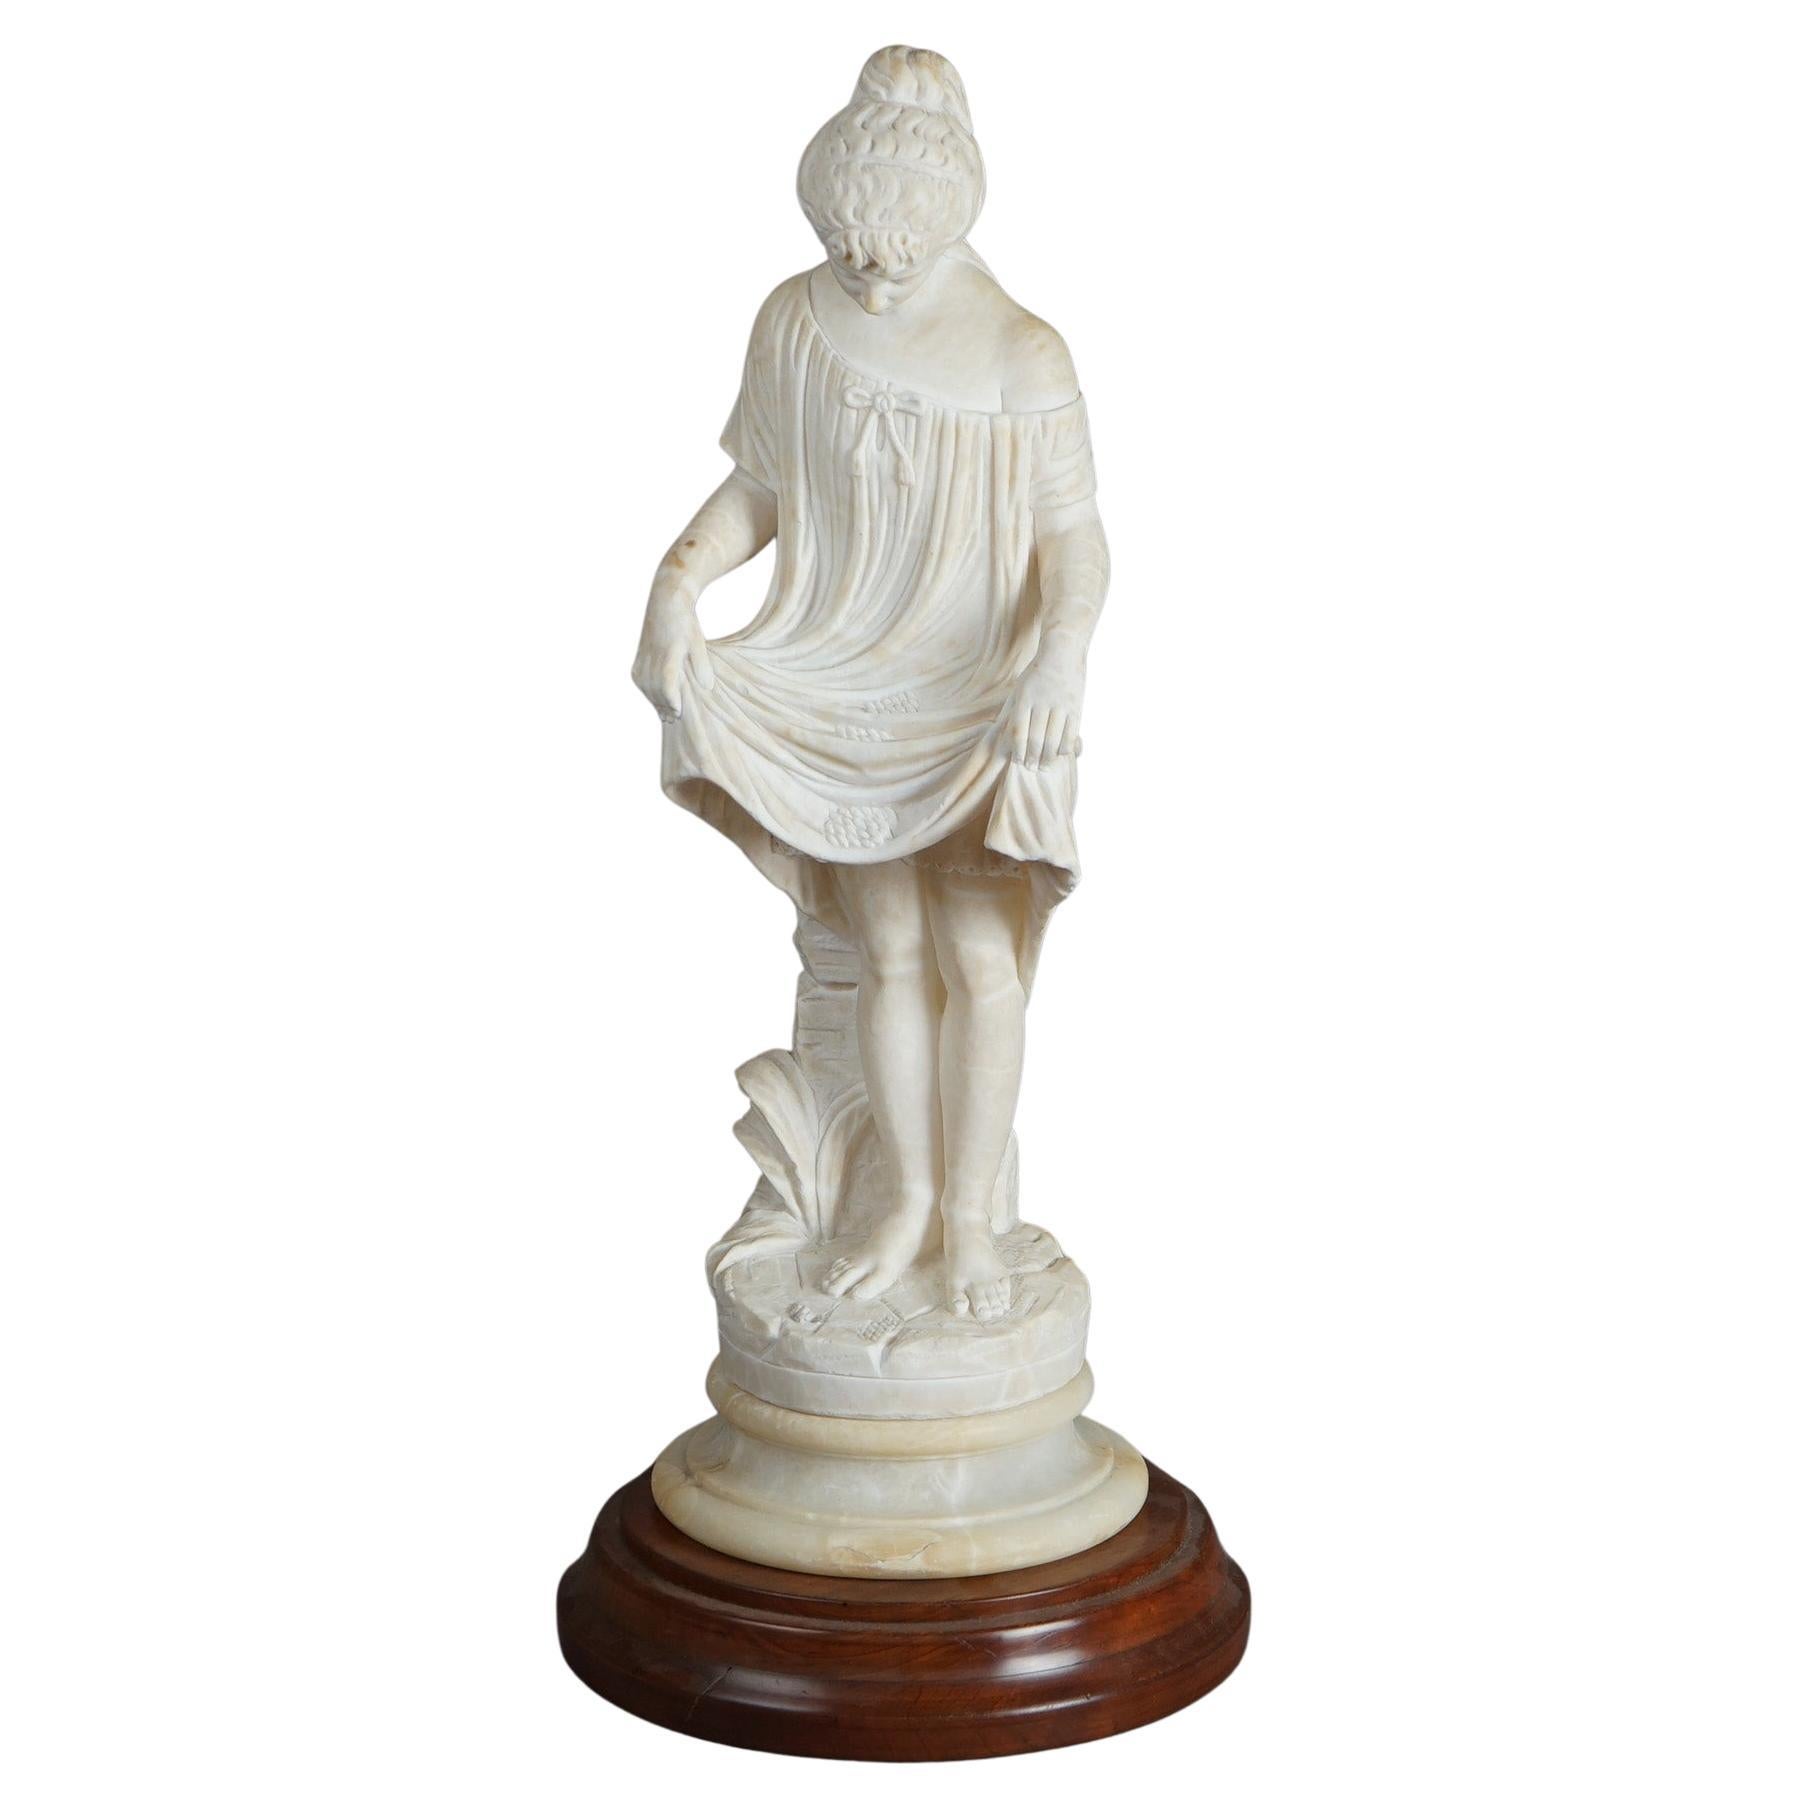 A Parian bust of a Renaissance Woman